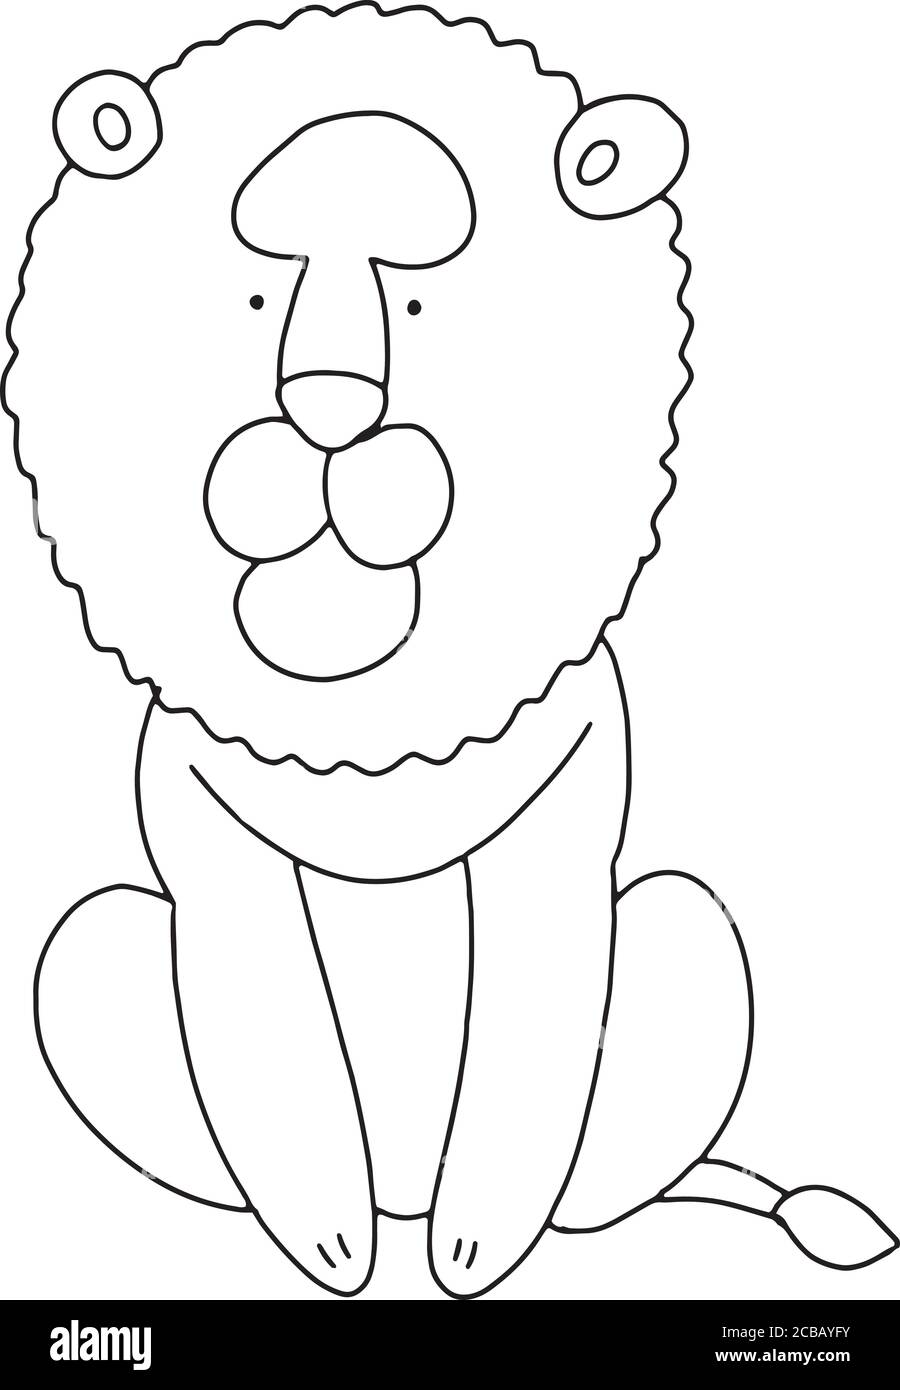 Vektor-Illustration von Löwen Cartoon-Logo Stock Vektor